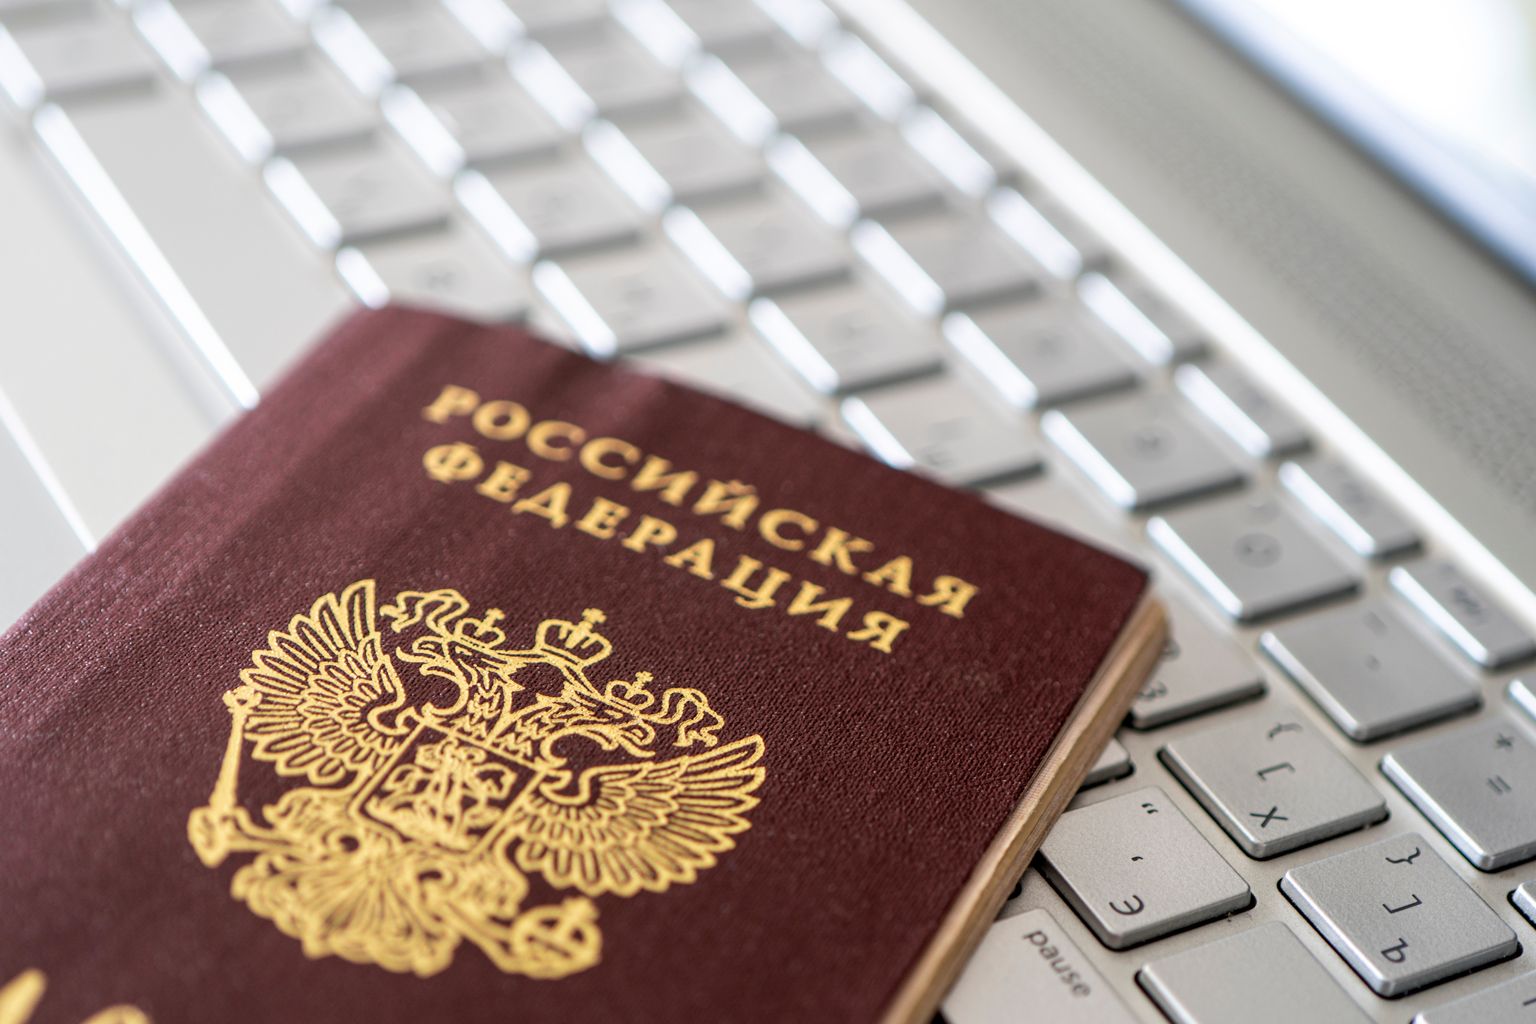 Krievijas Federācijas pase. Attēls ilustratīvs.